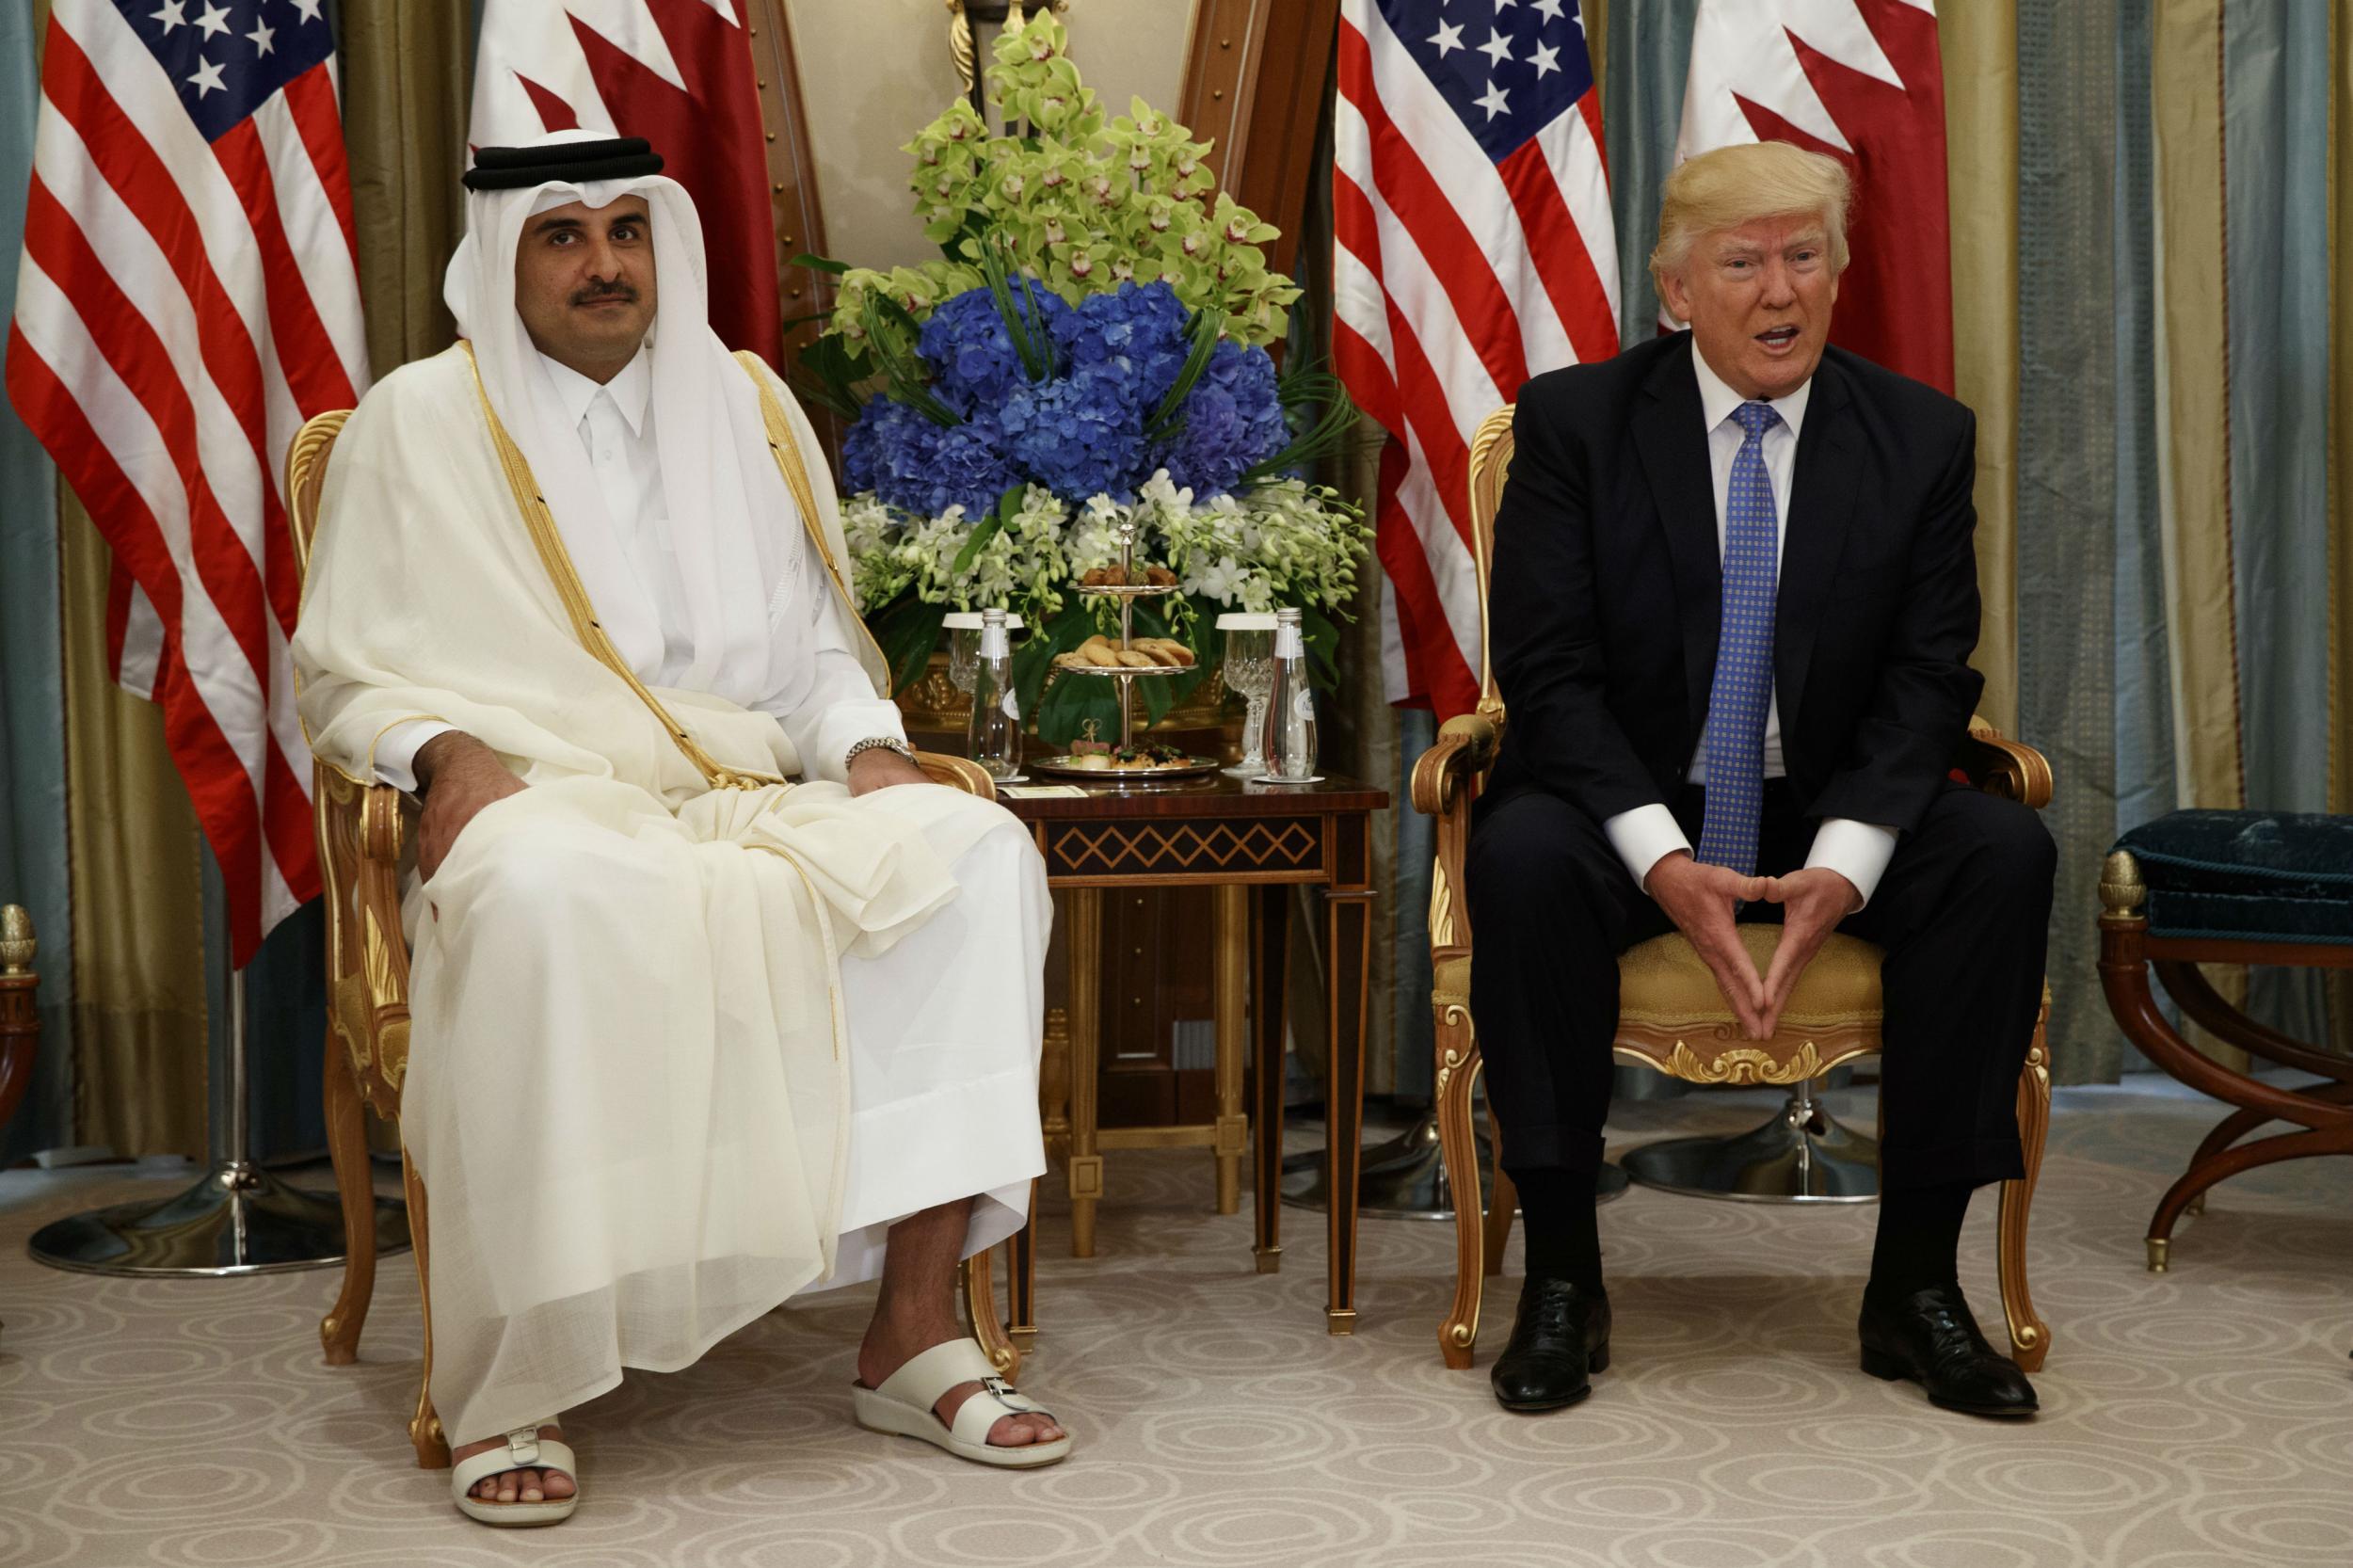 Mr Trump spoke with Qatar's Emir Sheikh Tamim Bin Hamad Al-Thani in Riyadh